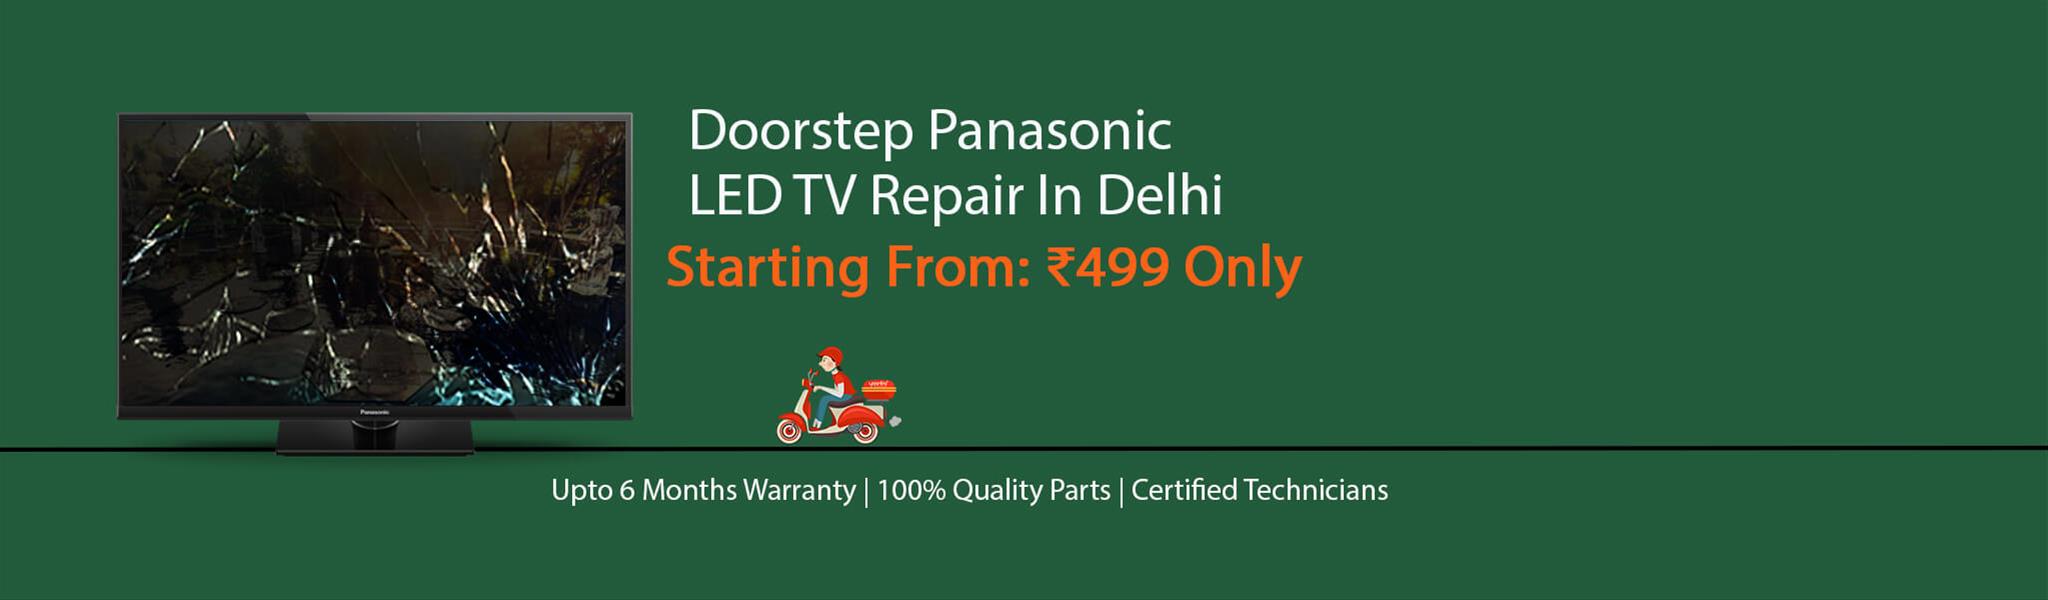 panasonic-tv-repair-in-delhi.jpg